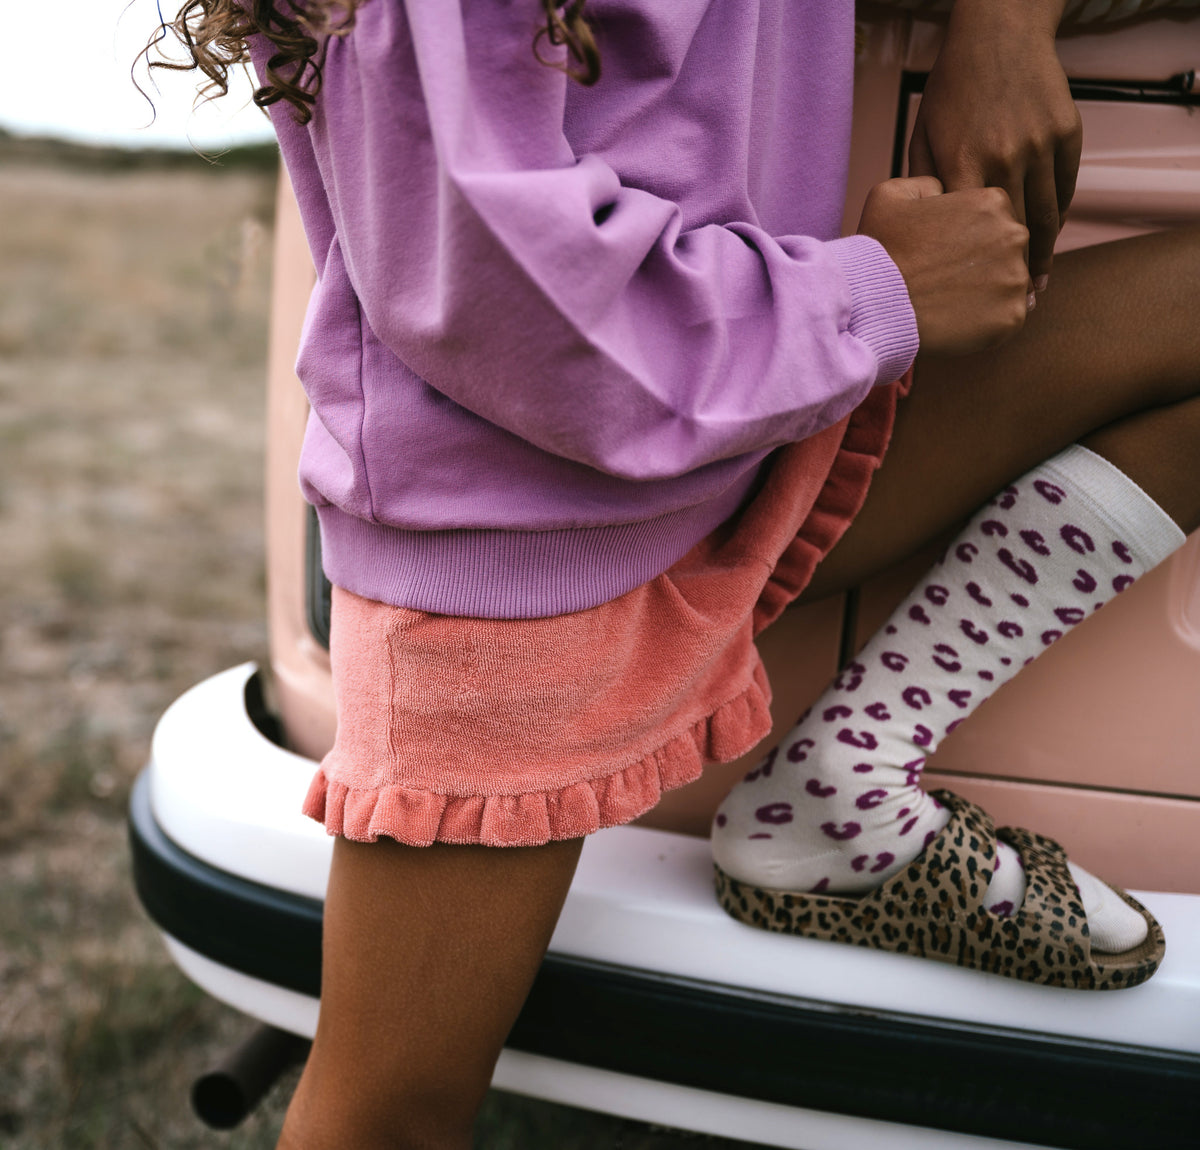 Knee Socks | Happy Leopard Purple